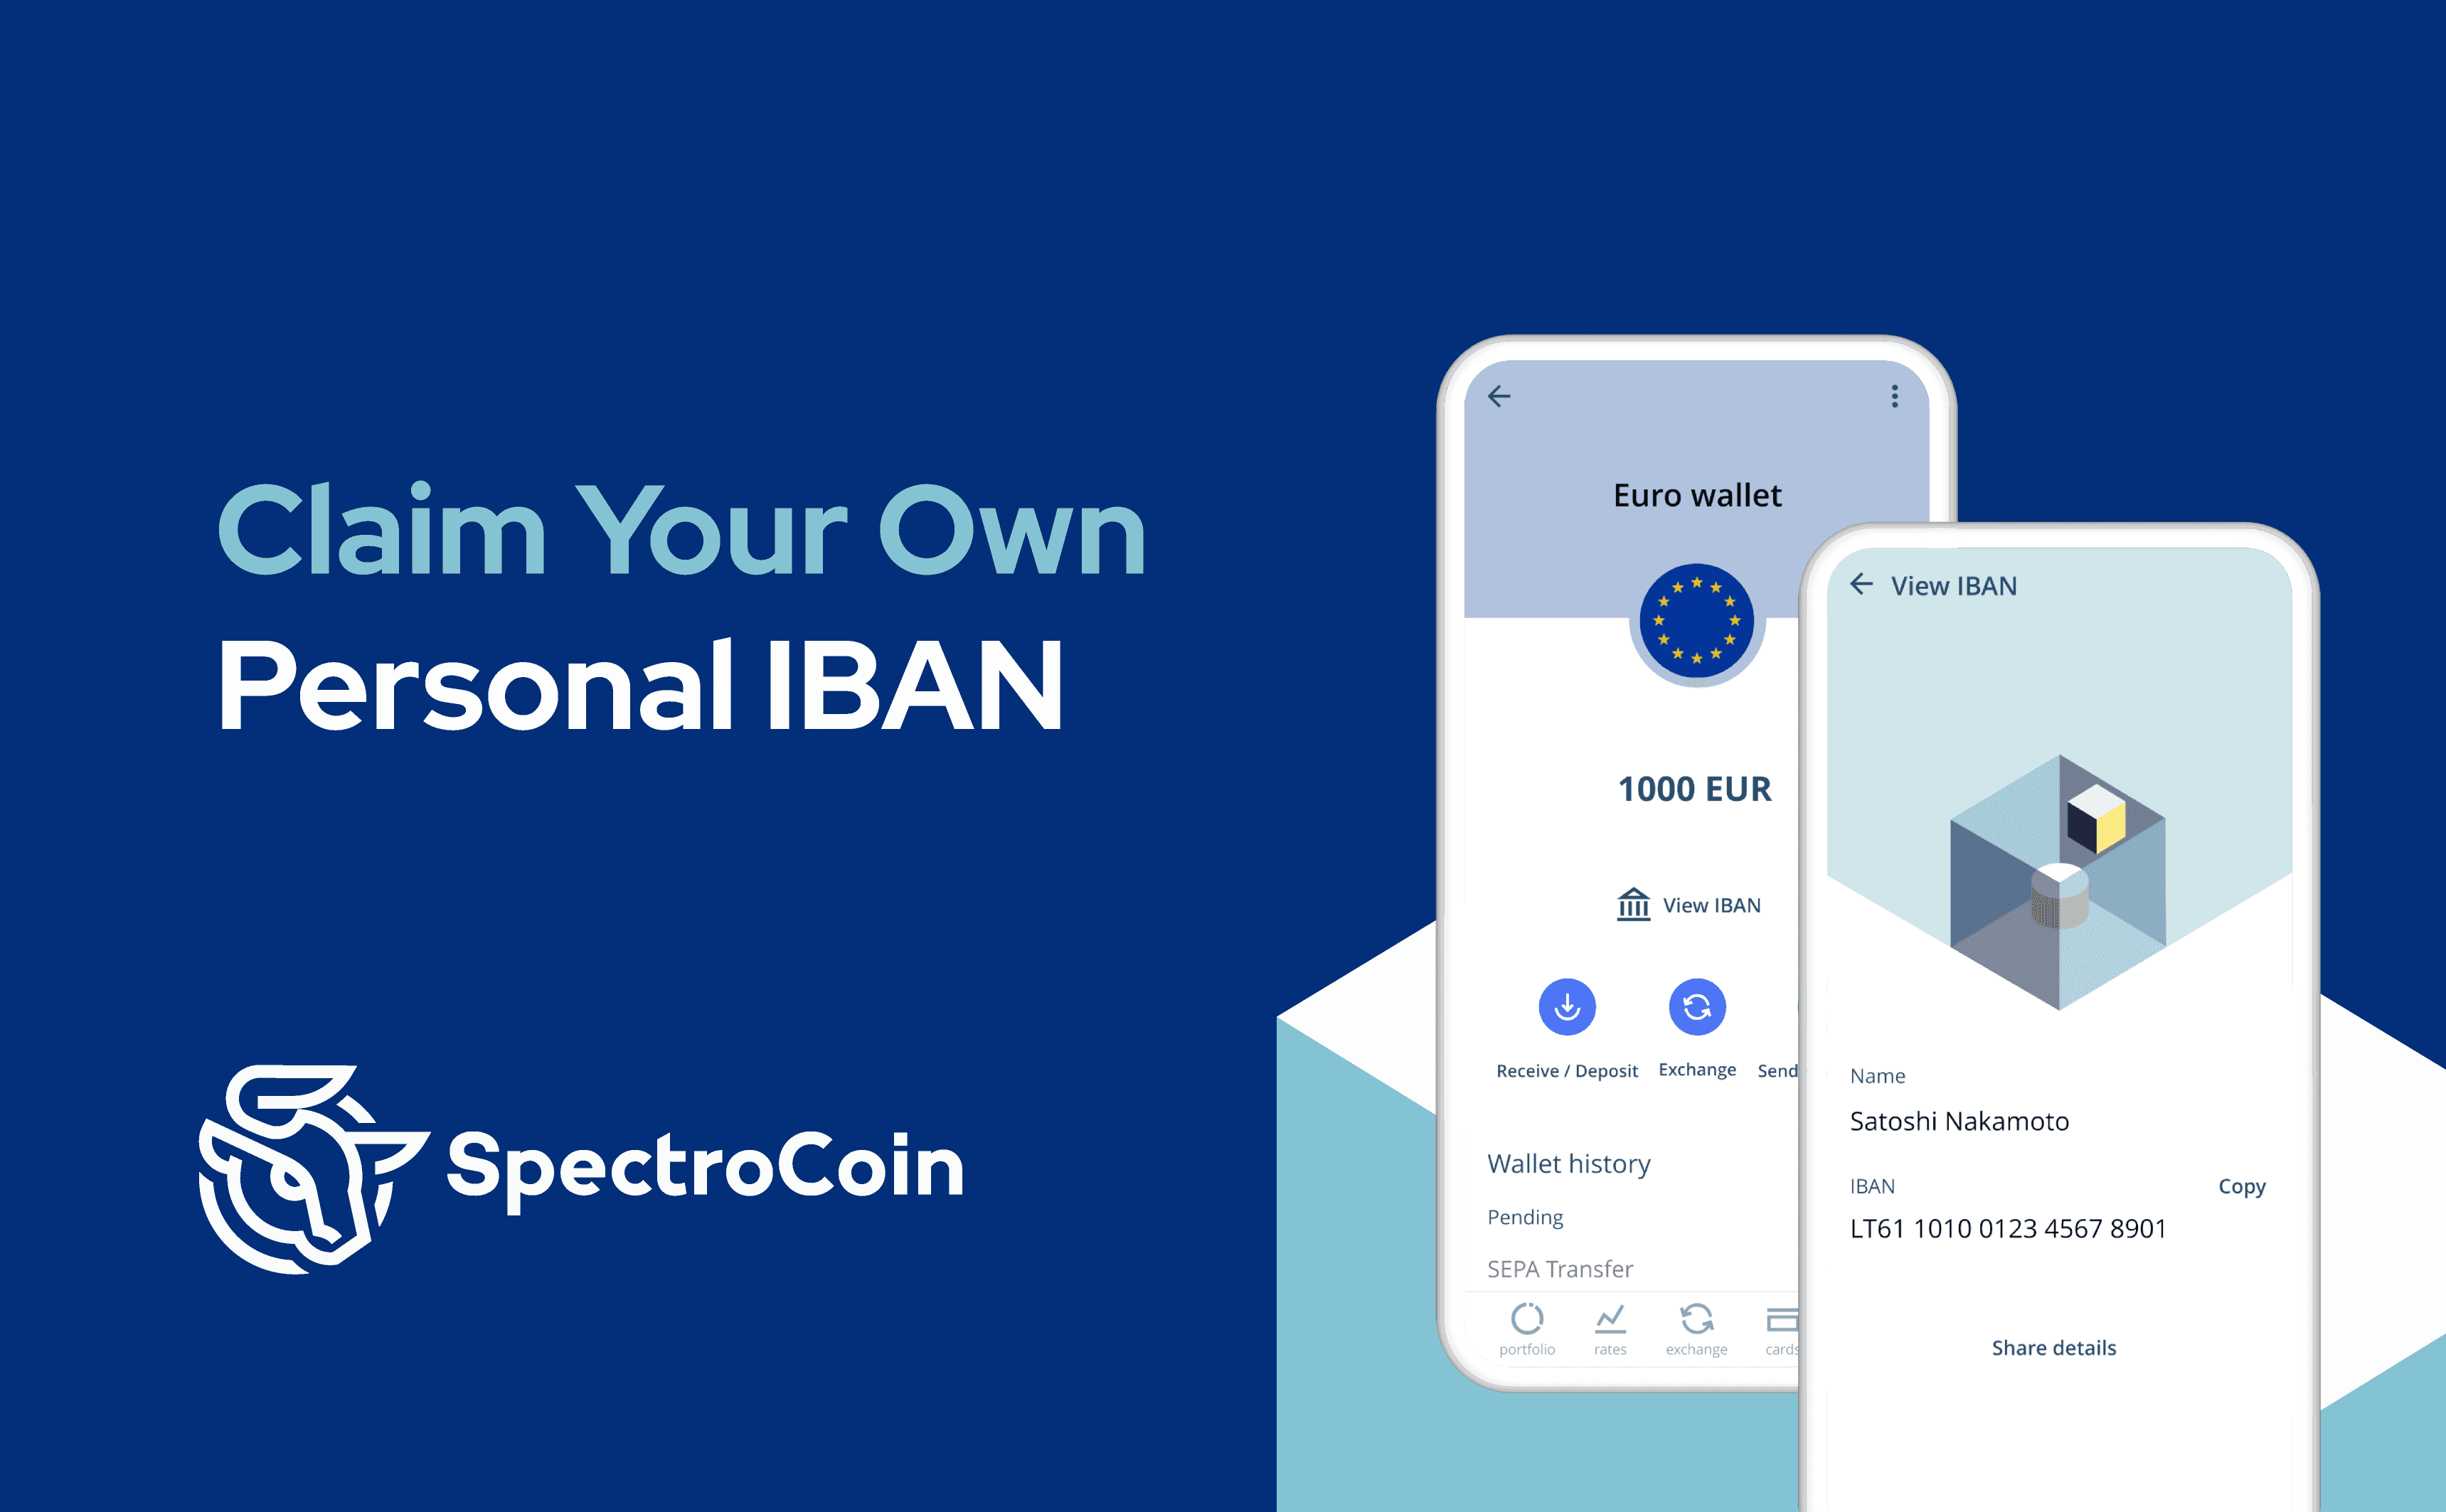 Nuo šiol vartotojai gali gauti savo IBAN paskyrą SpectroCoin platformoje.